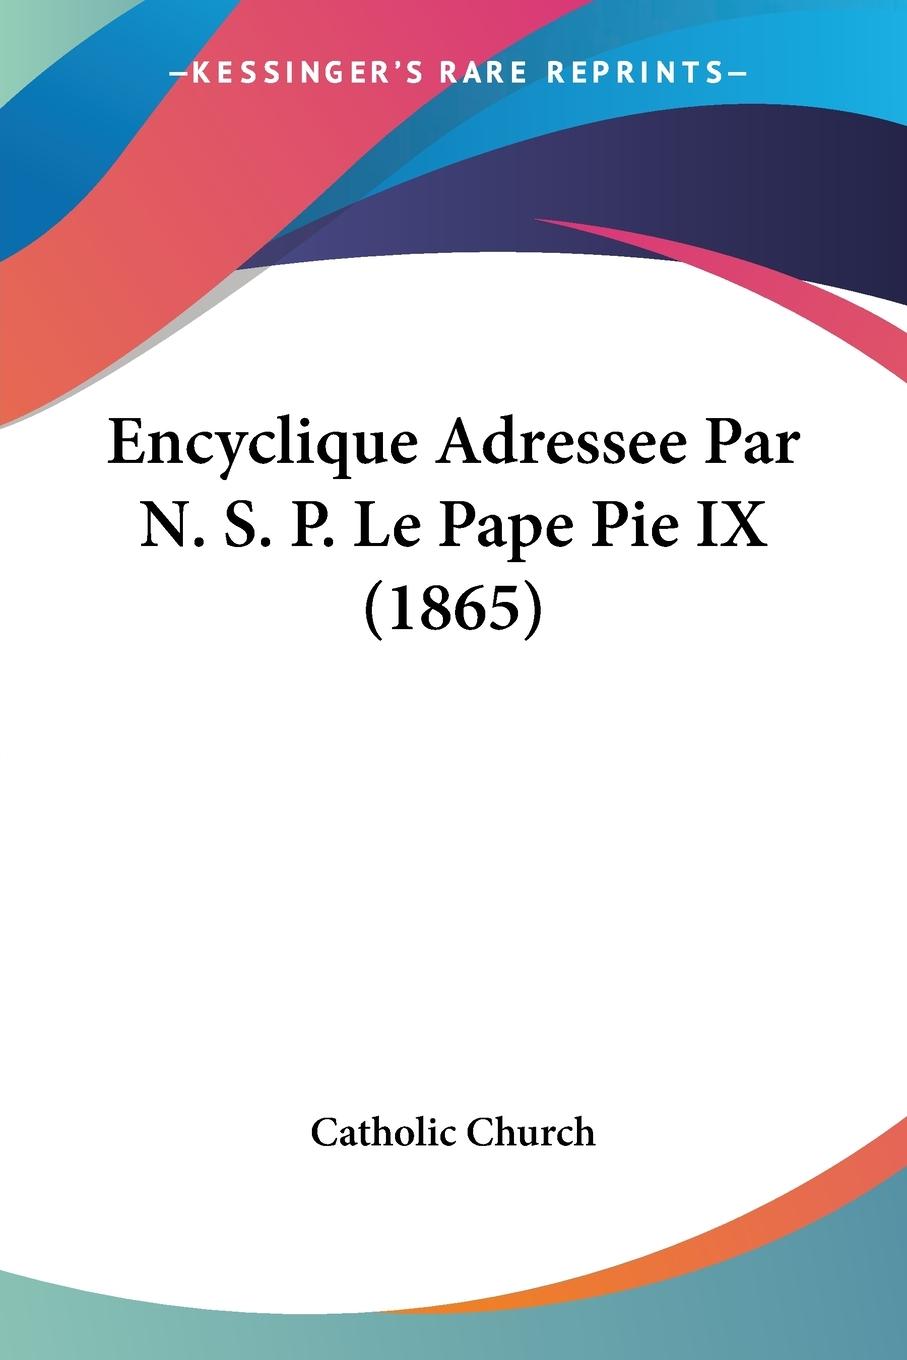 Encyclique Adressee Par N. S. P. Le Pape Pie IX (1865) - Catholic Church